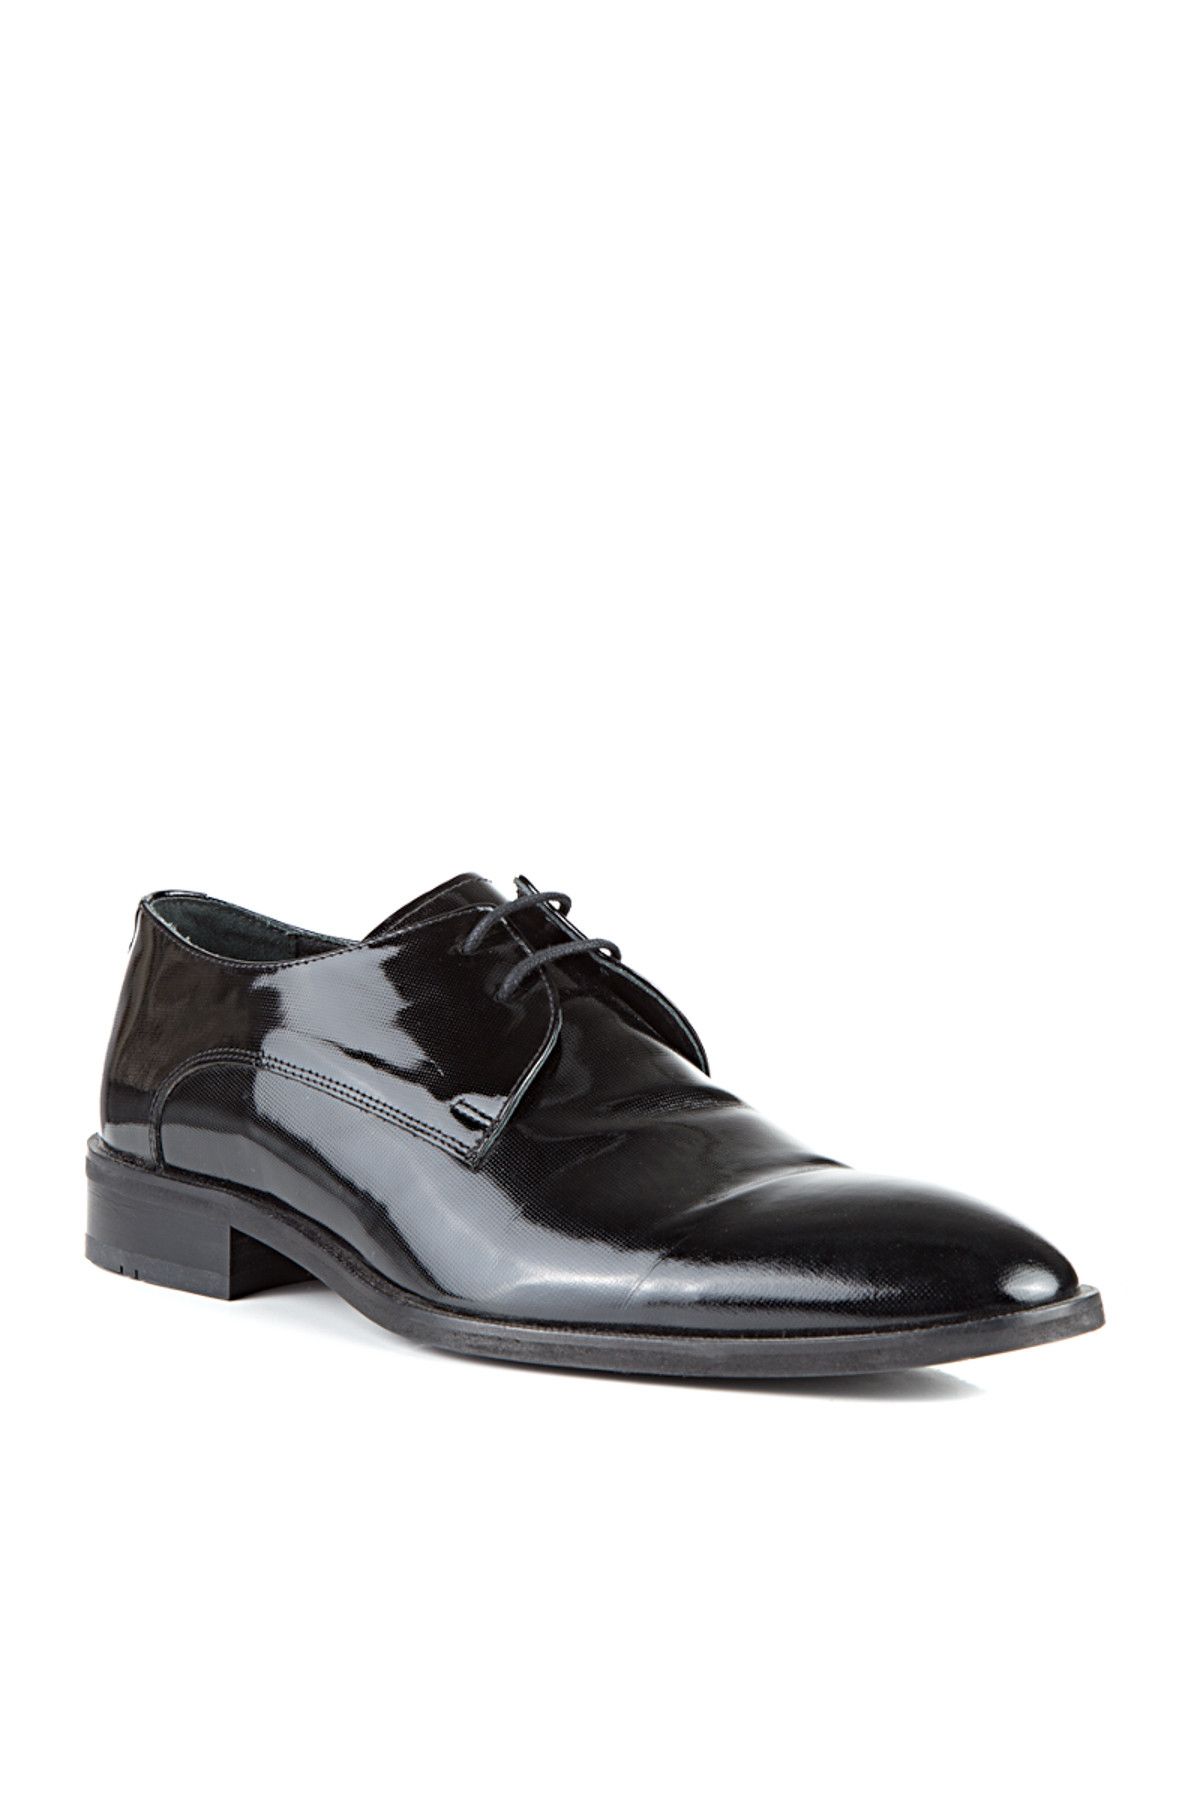 D'S Damat Siyah Klasik Ayakkabı-6HSS90316133-001